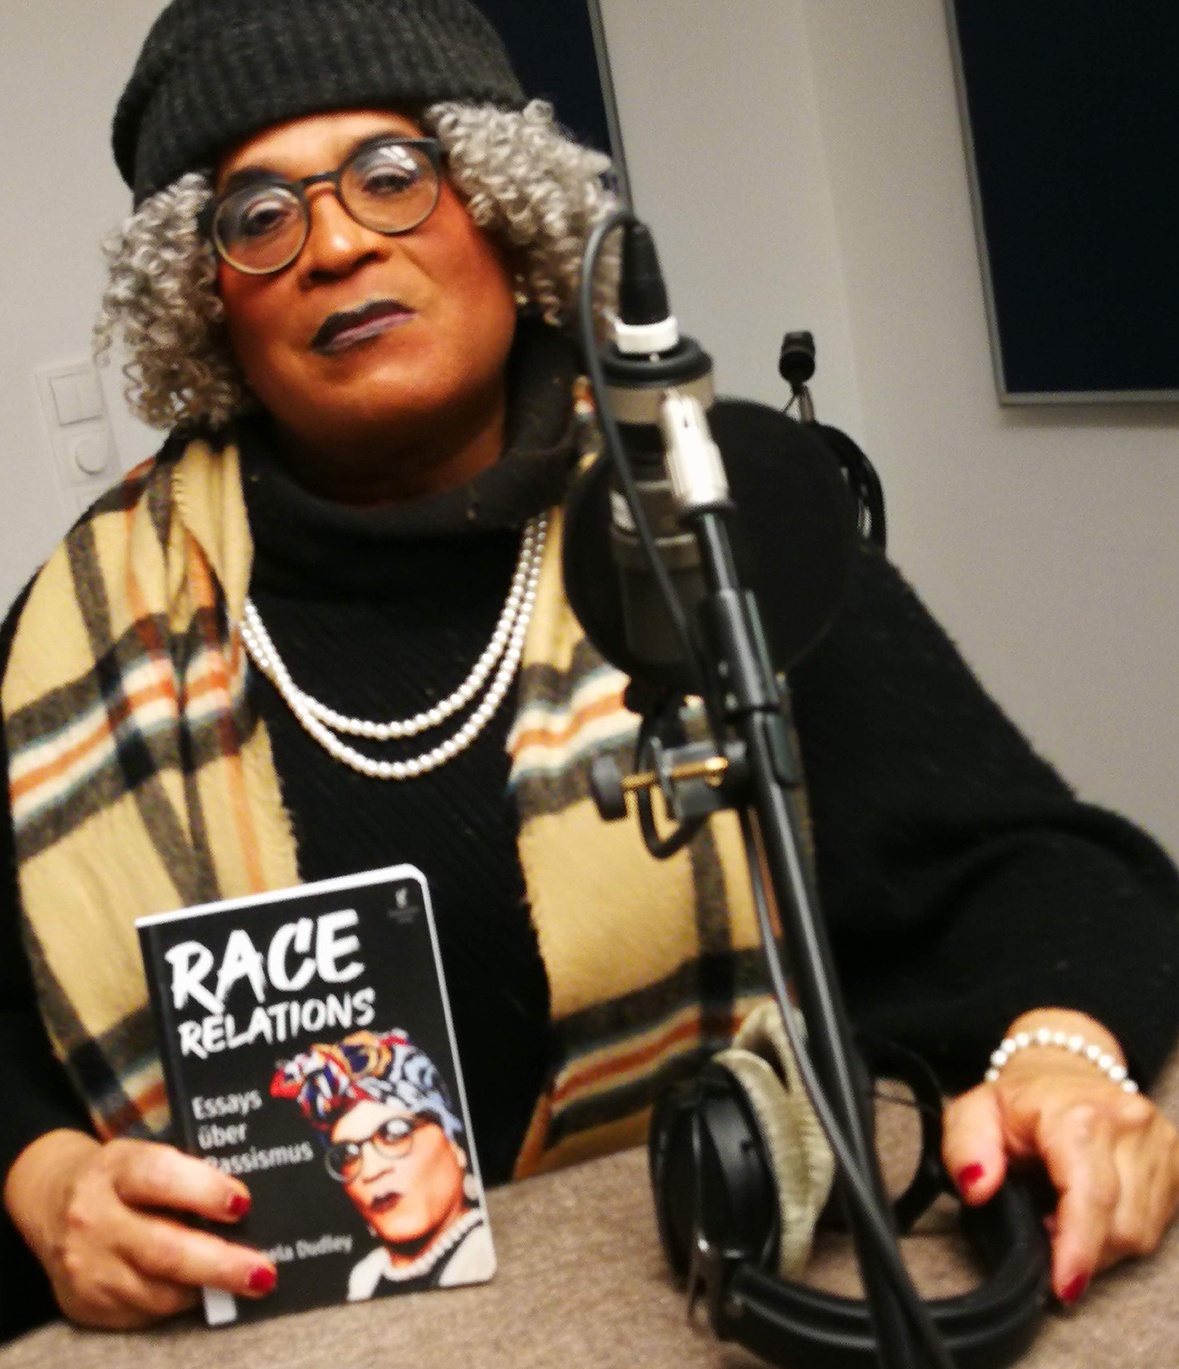 Die Autorin mit ihrem Buch „Race Relations“